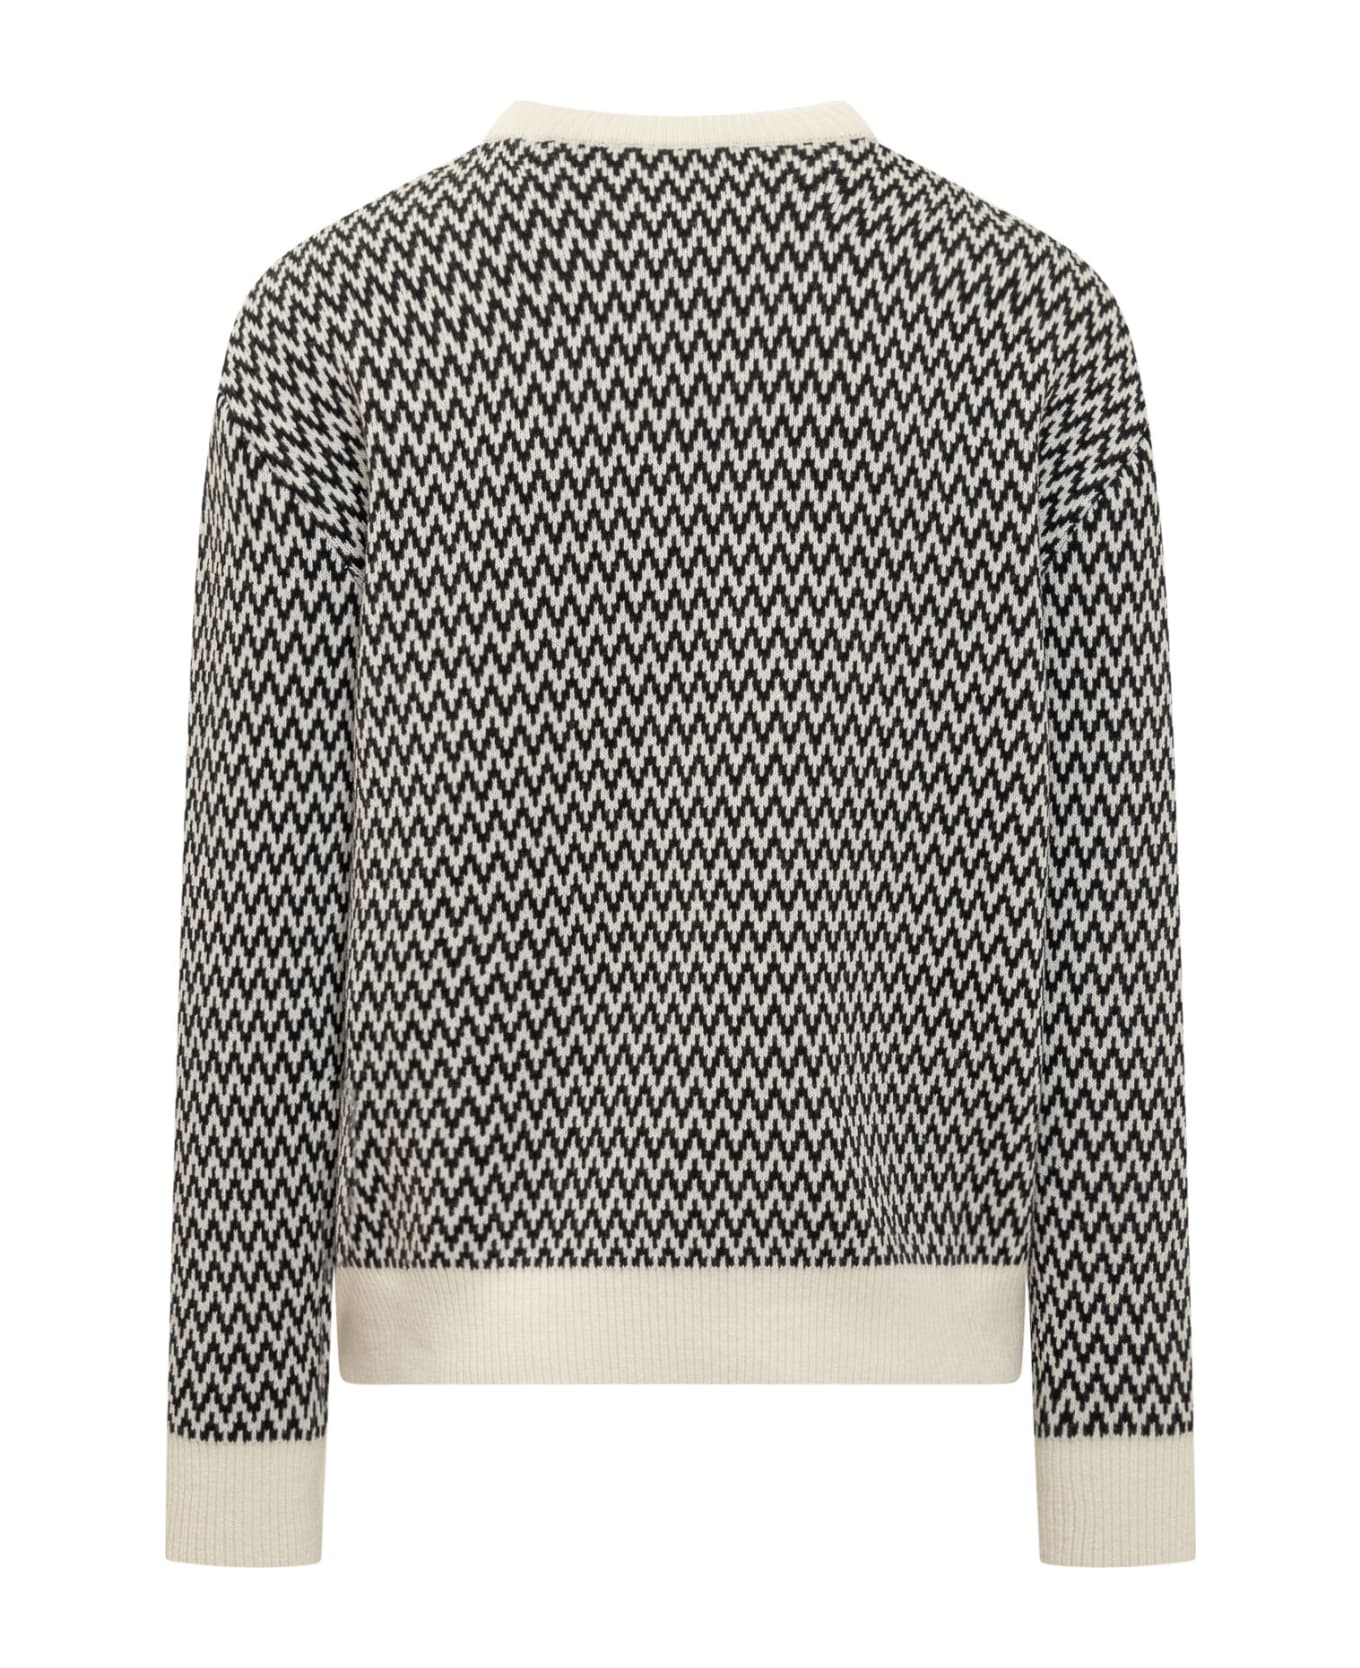 Lanvin Curb Sweater - Black Ecru